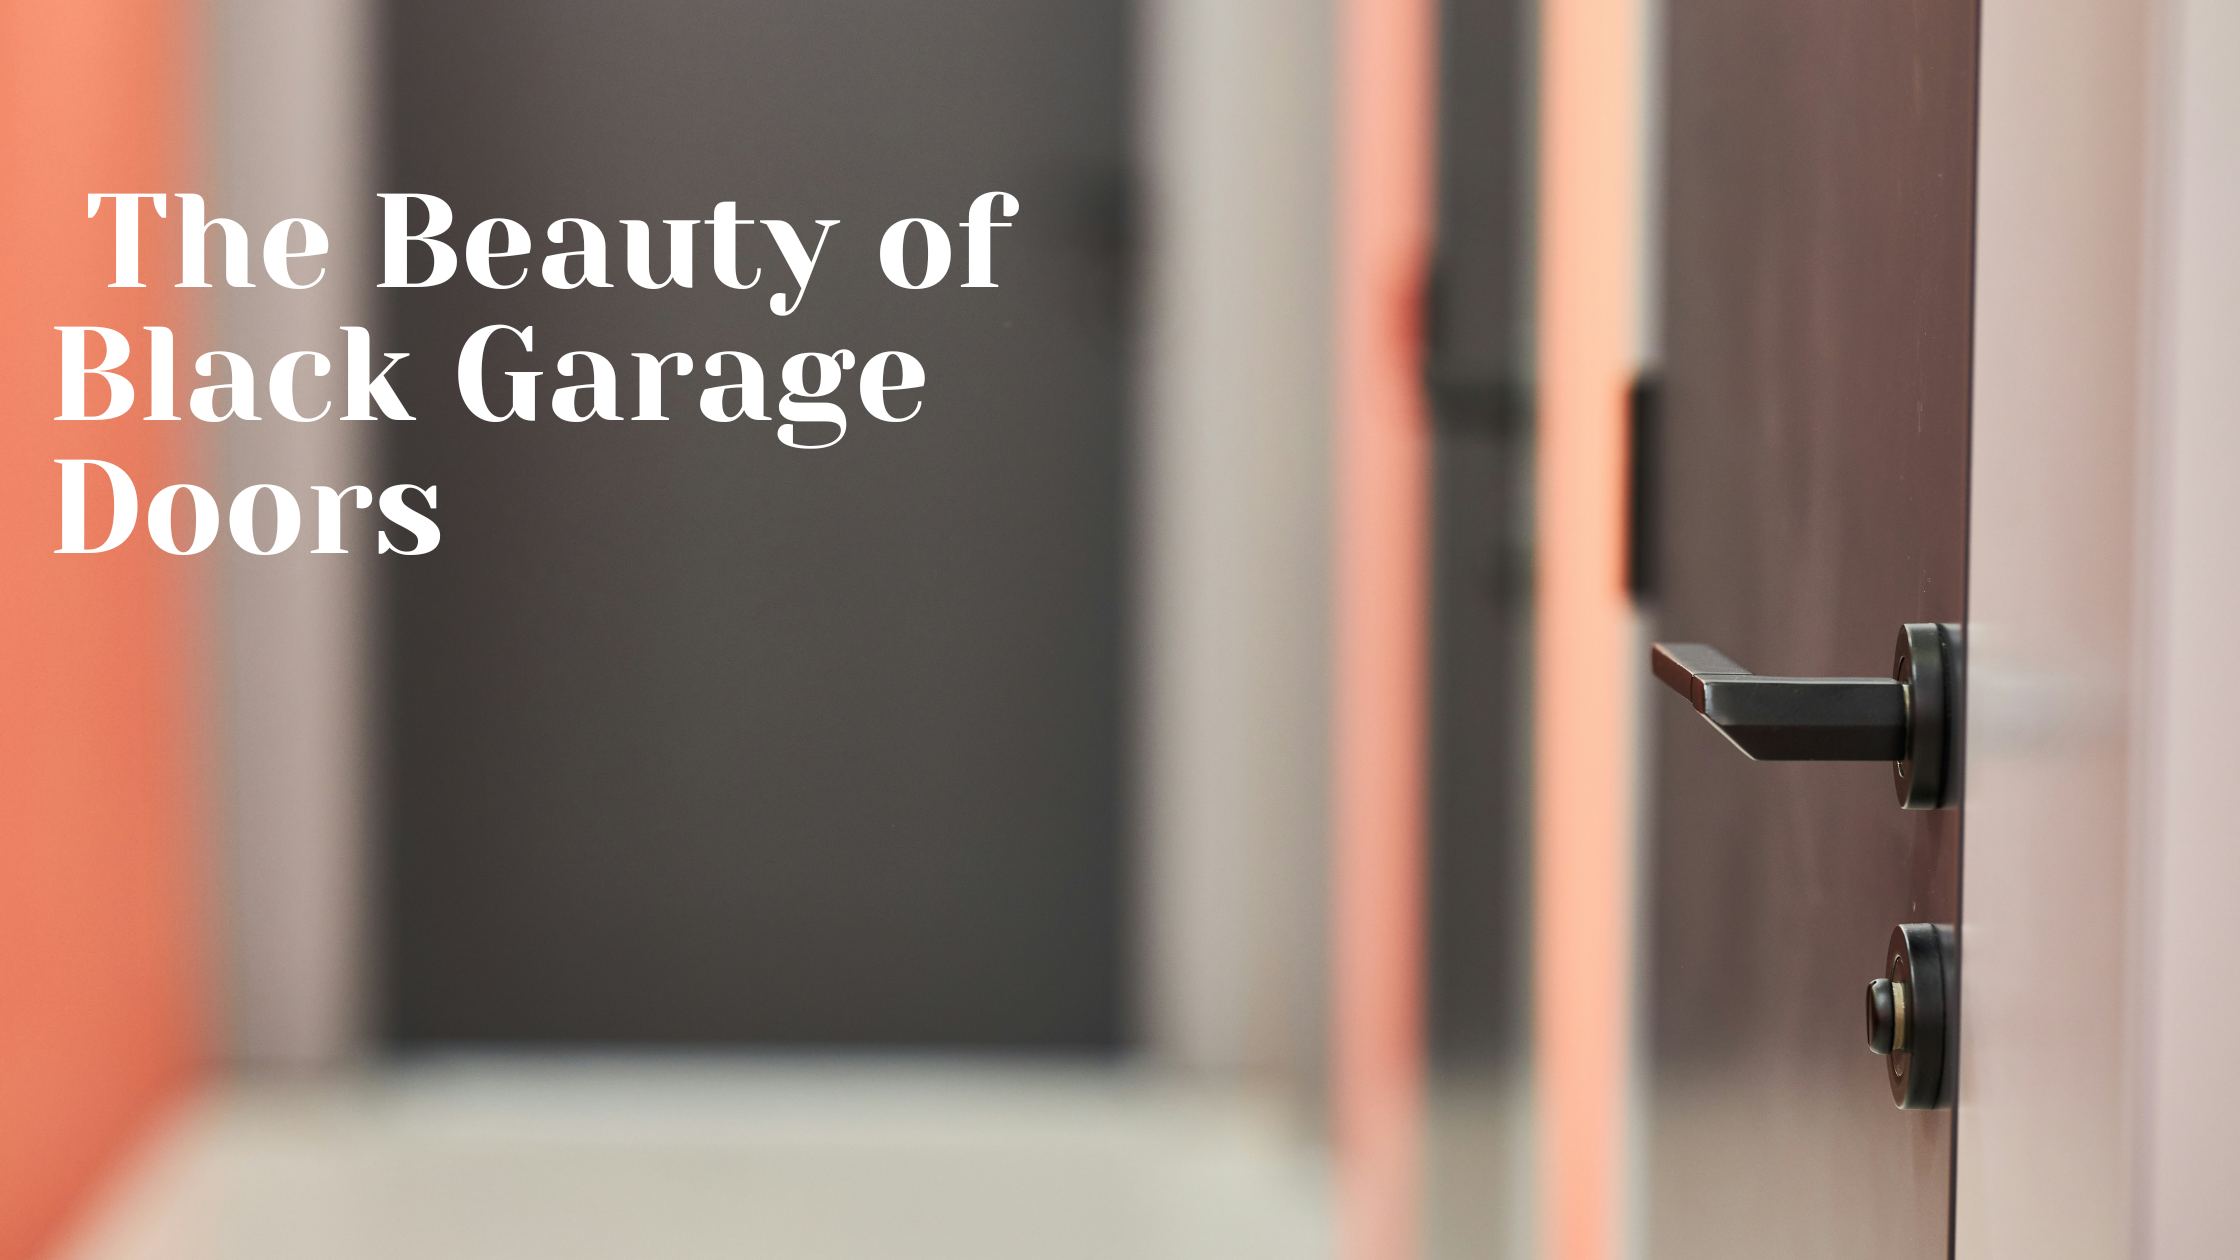 The Beauty of Black Garage Doors